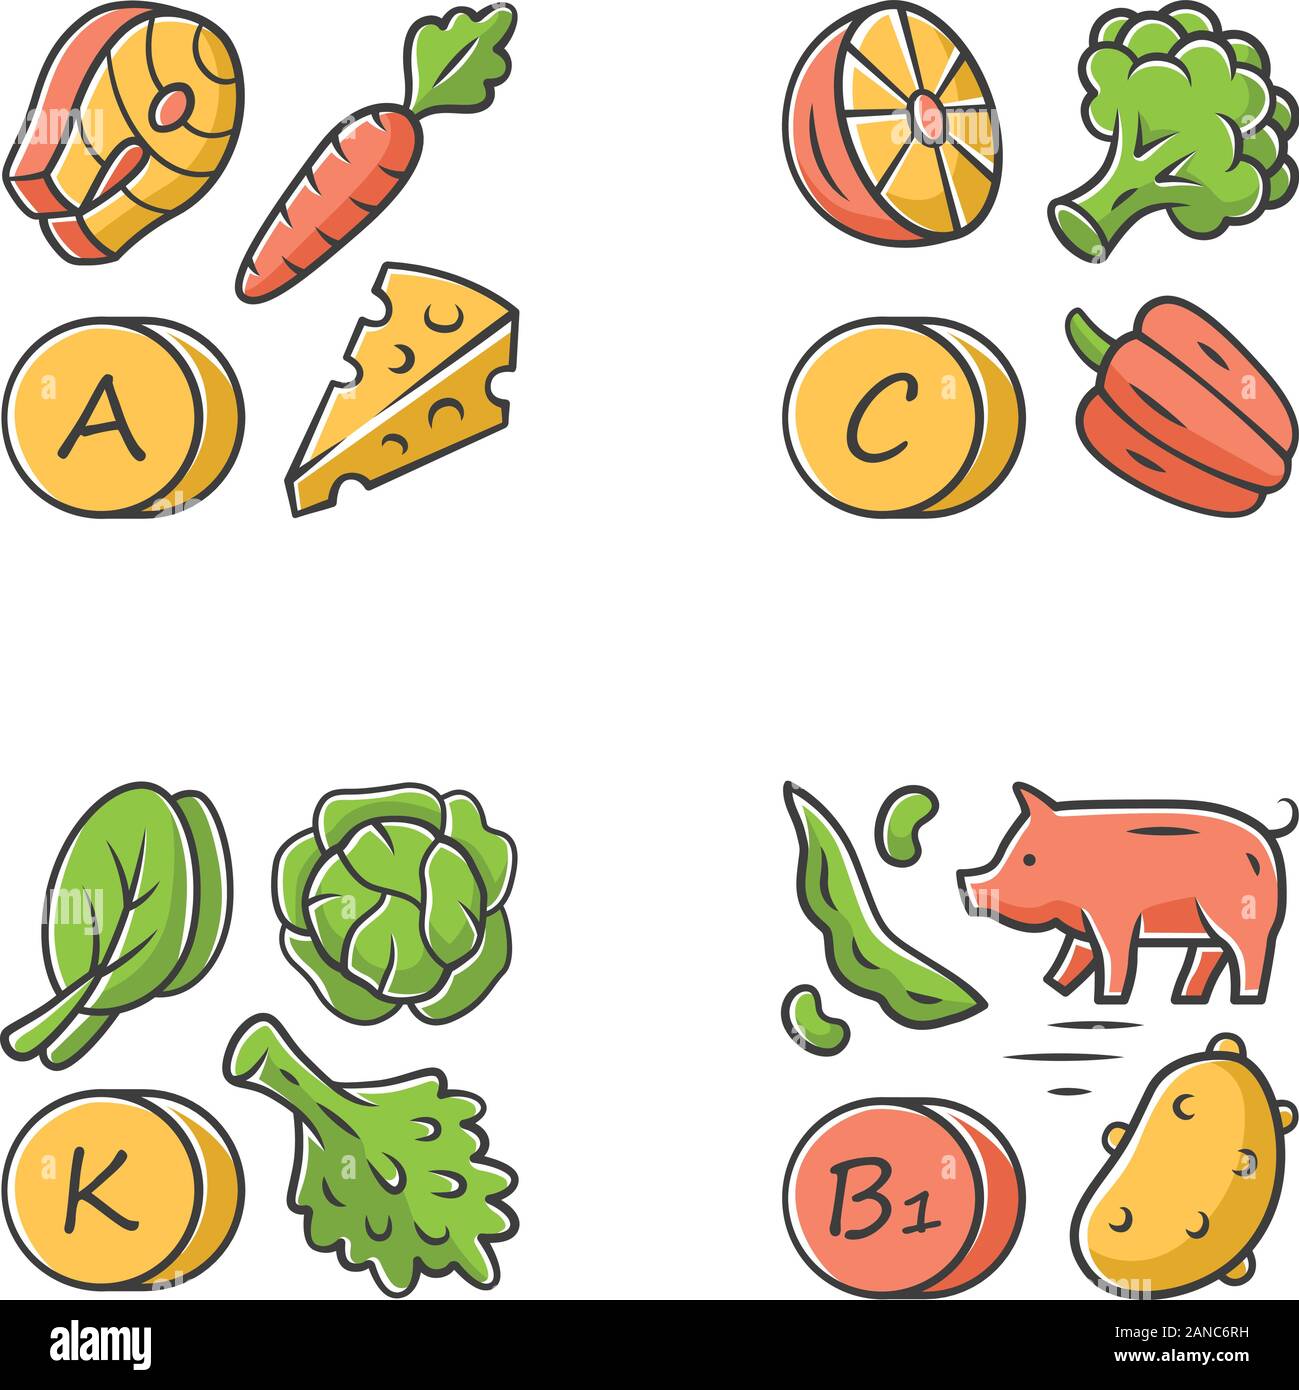 Vitamine farbige Symbole gesetzt. A, C, B1, K Vitamine natürliche Nahrungsquelle. Gemüse, essbare Grüns, Milchprodukte. Die richtige Ernährung. Mineralien, Antioxidationsmittel Stock Vektor